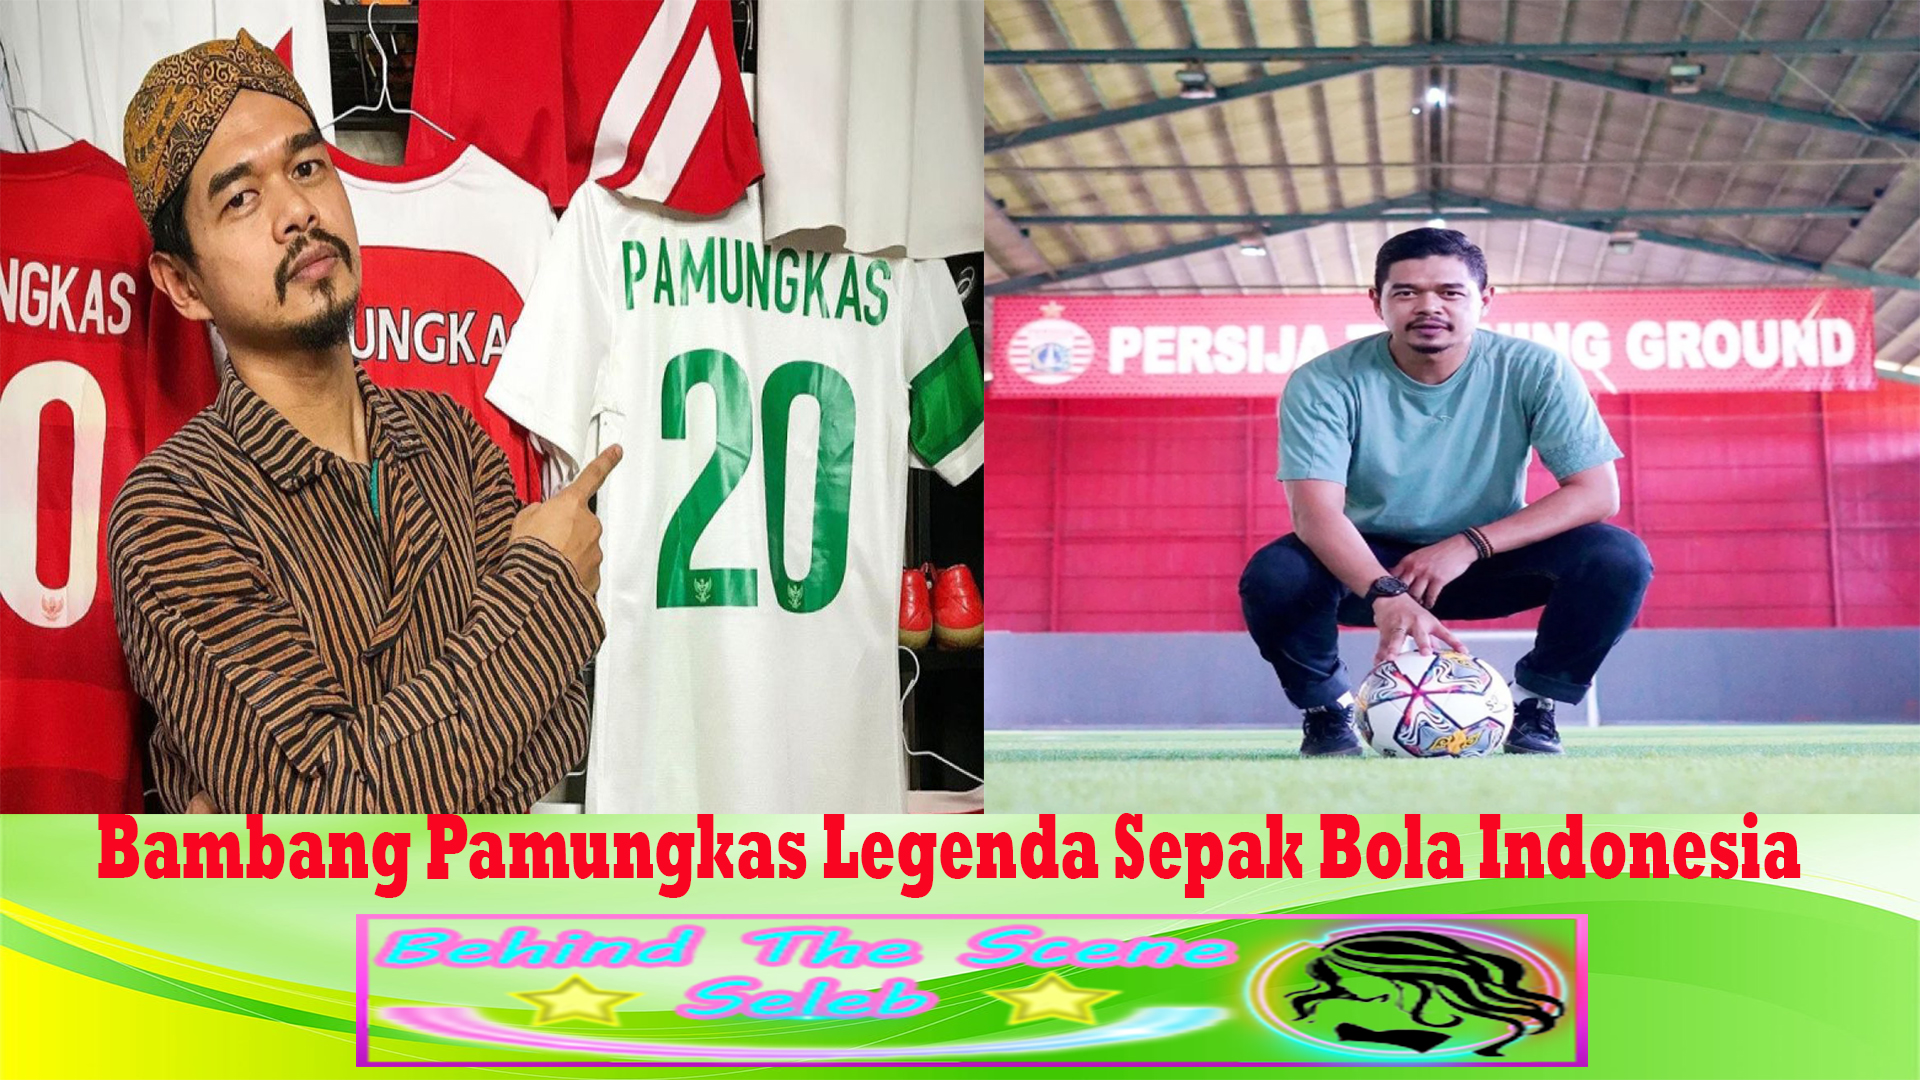 Bambang Pamungkas Legenda Sepak Bola Indonesia